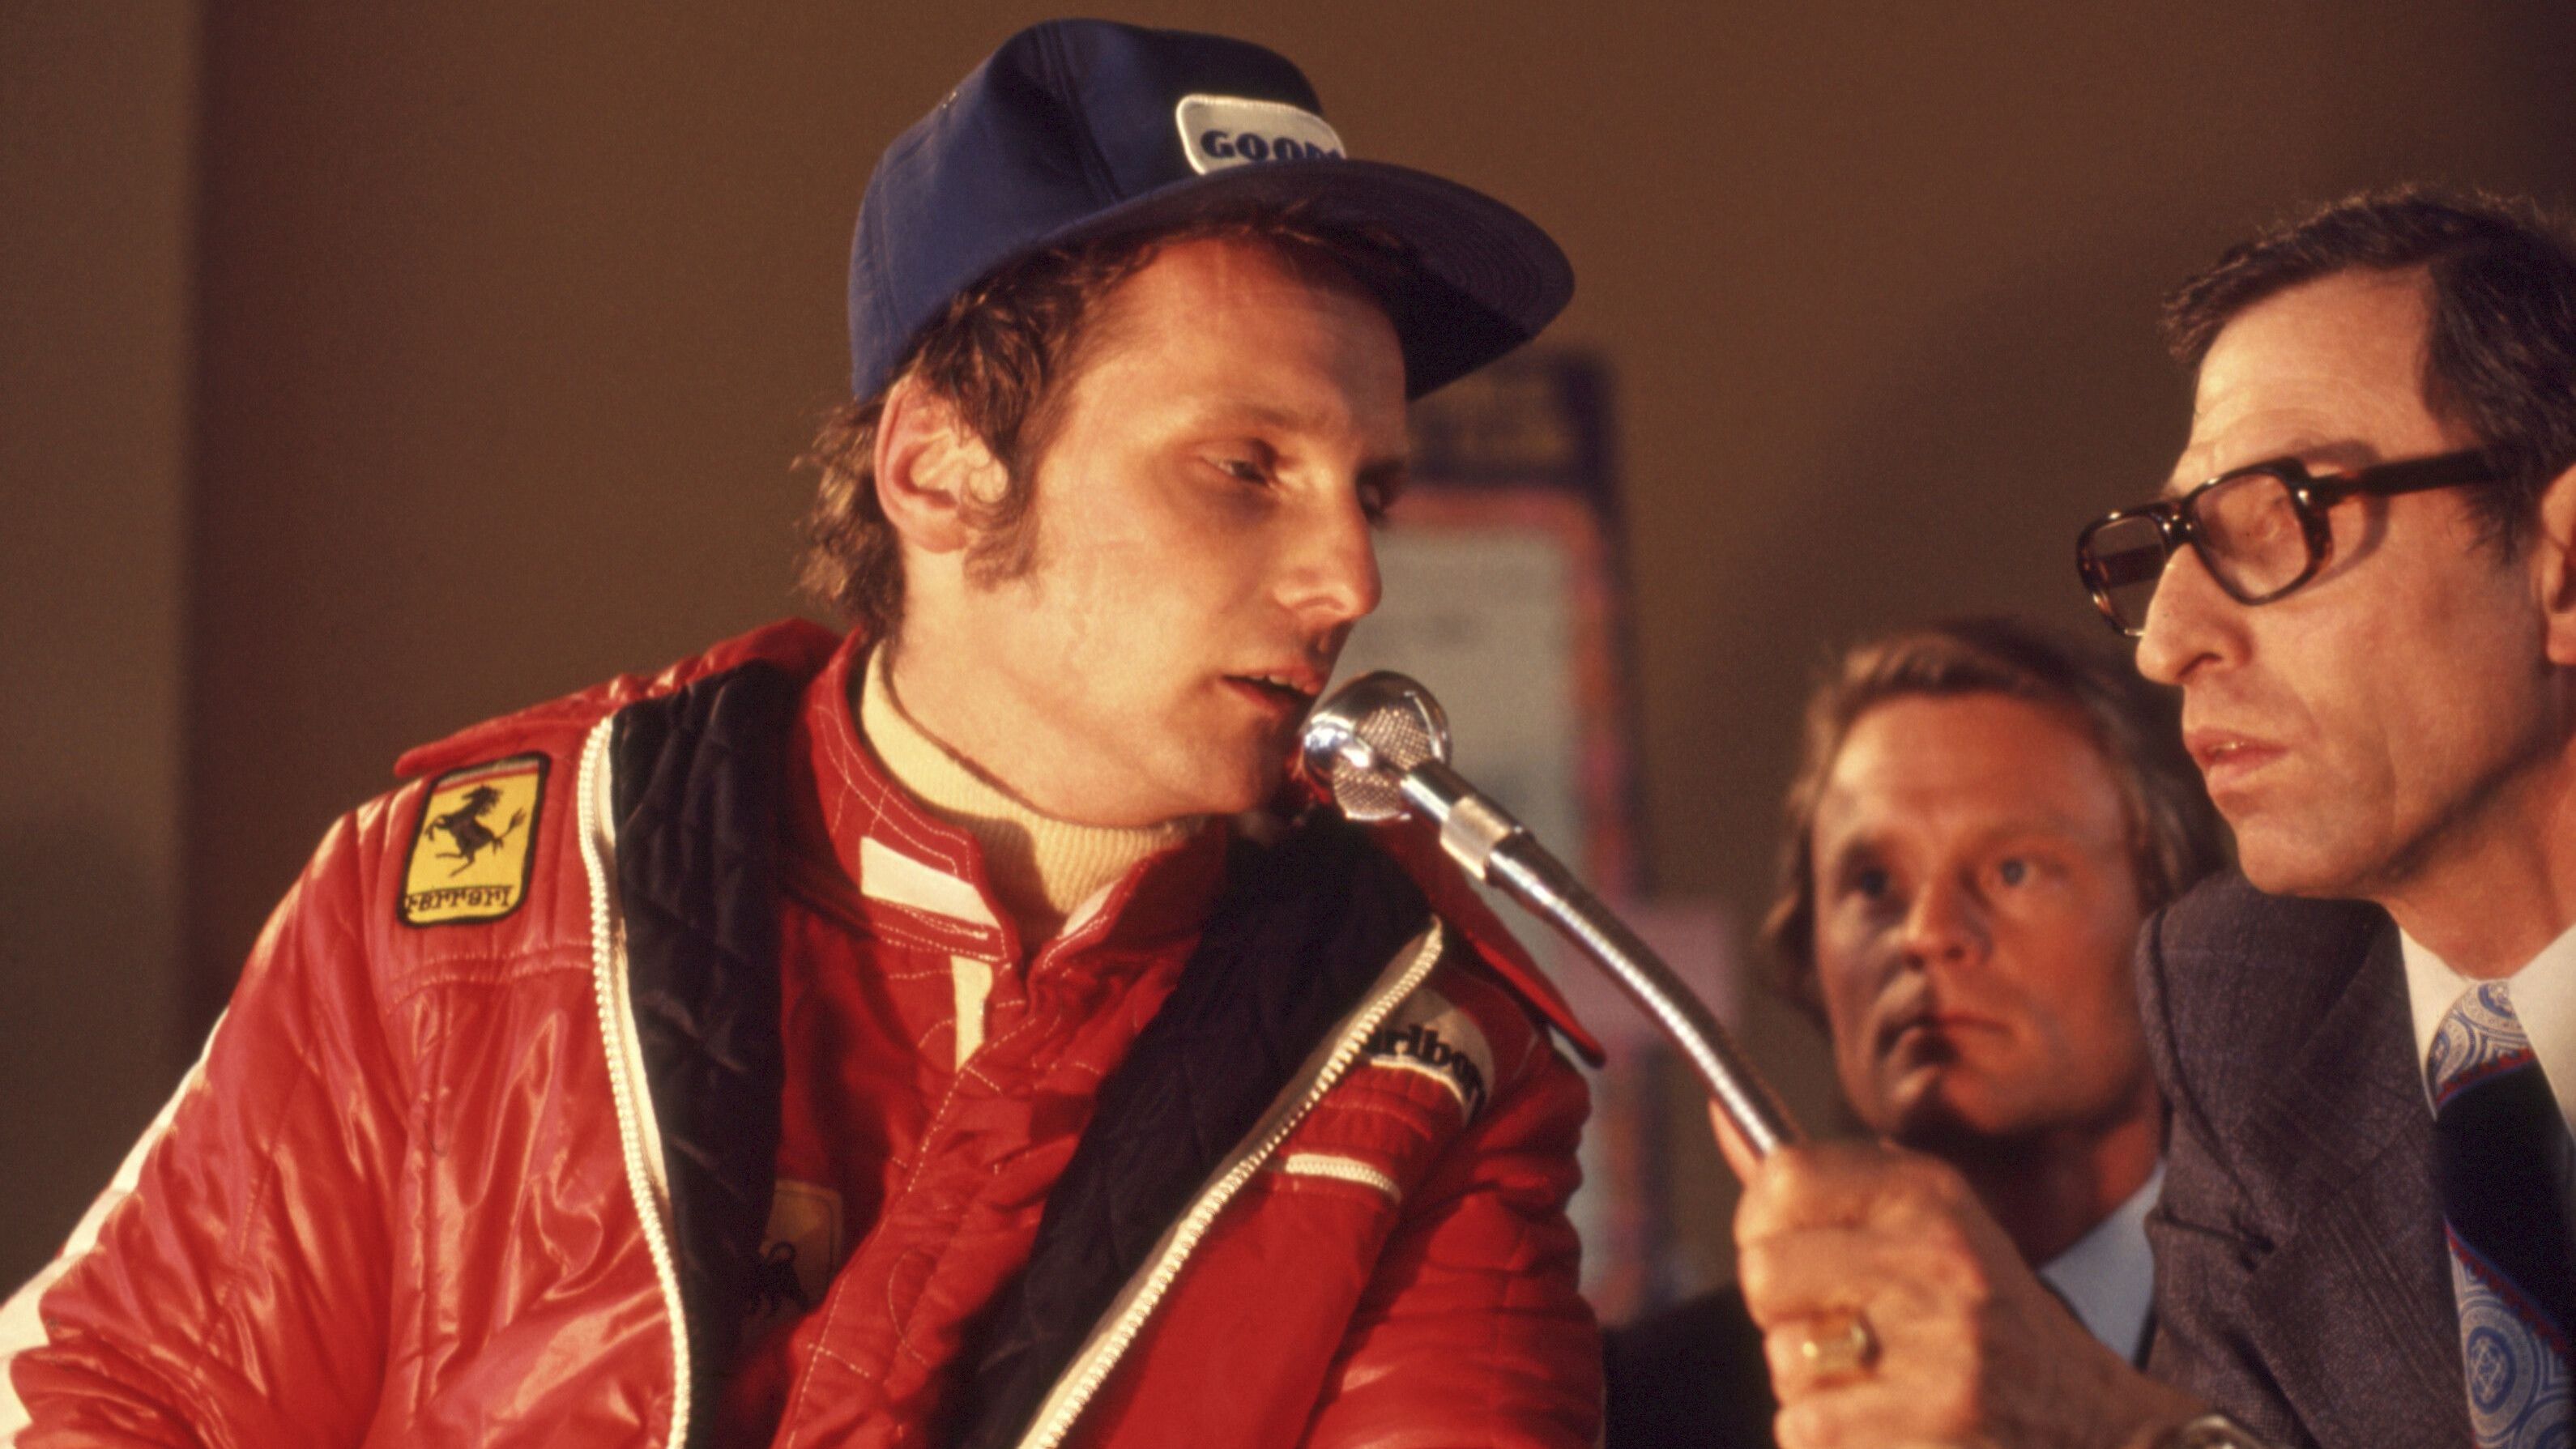 <strong>Niki Lauda</strong><br>Lauda feierte in den 70ern große Erfolge mit Ferrari, gewann zwei WM-Titel. Nach dem zweiten Triumph verließ er die Scuderia im Streit, weil er sich vom Team fallen gelassen fühlte. In der Folgesaison wechselte er zu Brabham, die durch ihren Hauptsponsor das notwendige Geld hatten. Eine lukrative, sportlich aber schlechte Entscheidung: In neun Rennen fiel Lauda aus.